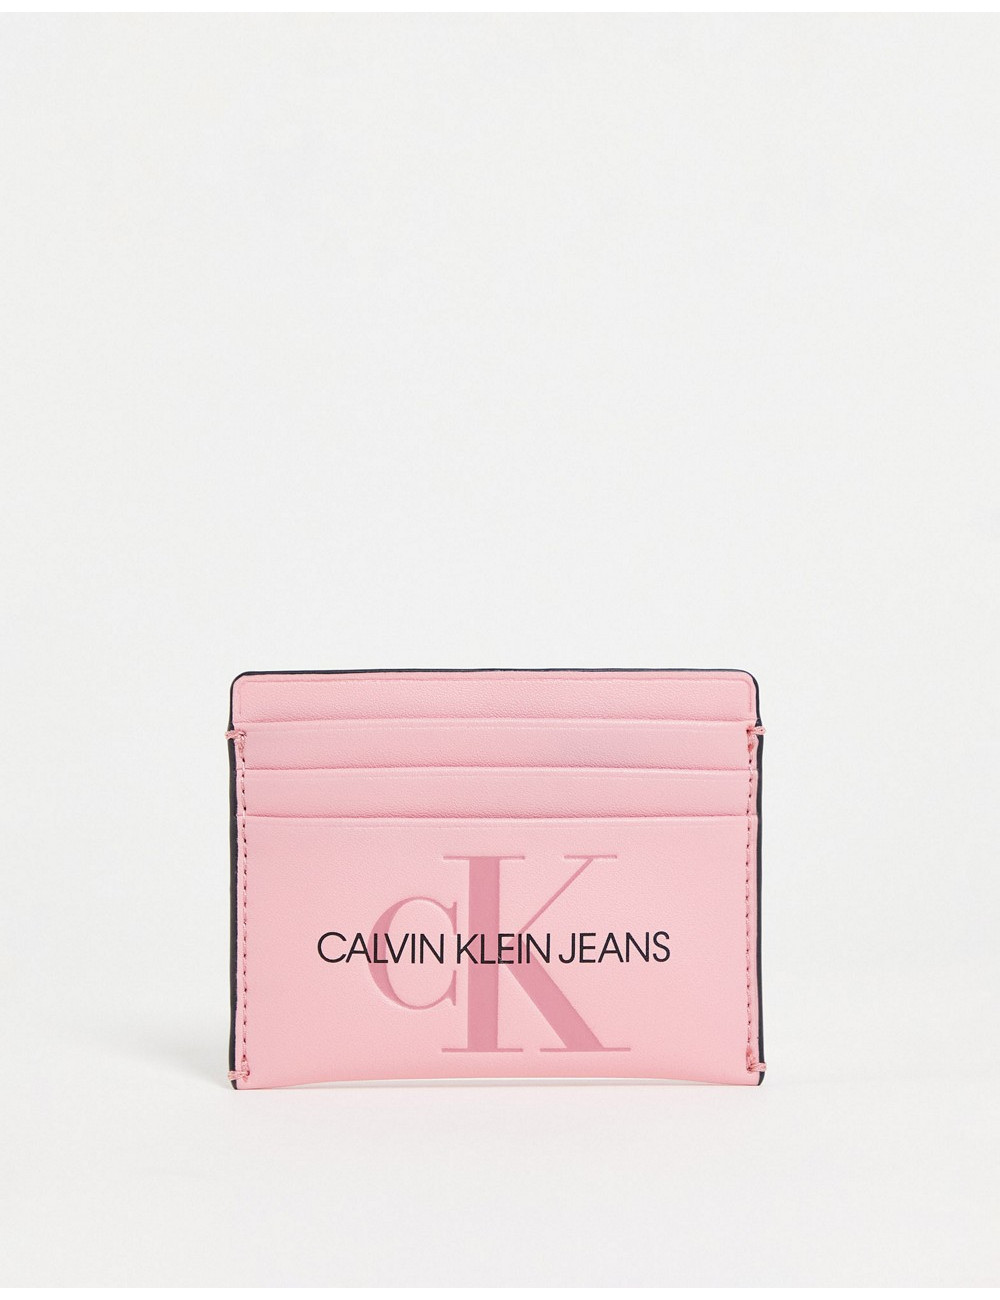 Calvin Klein Jeans card...